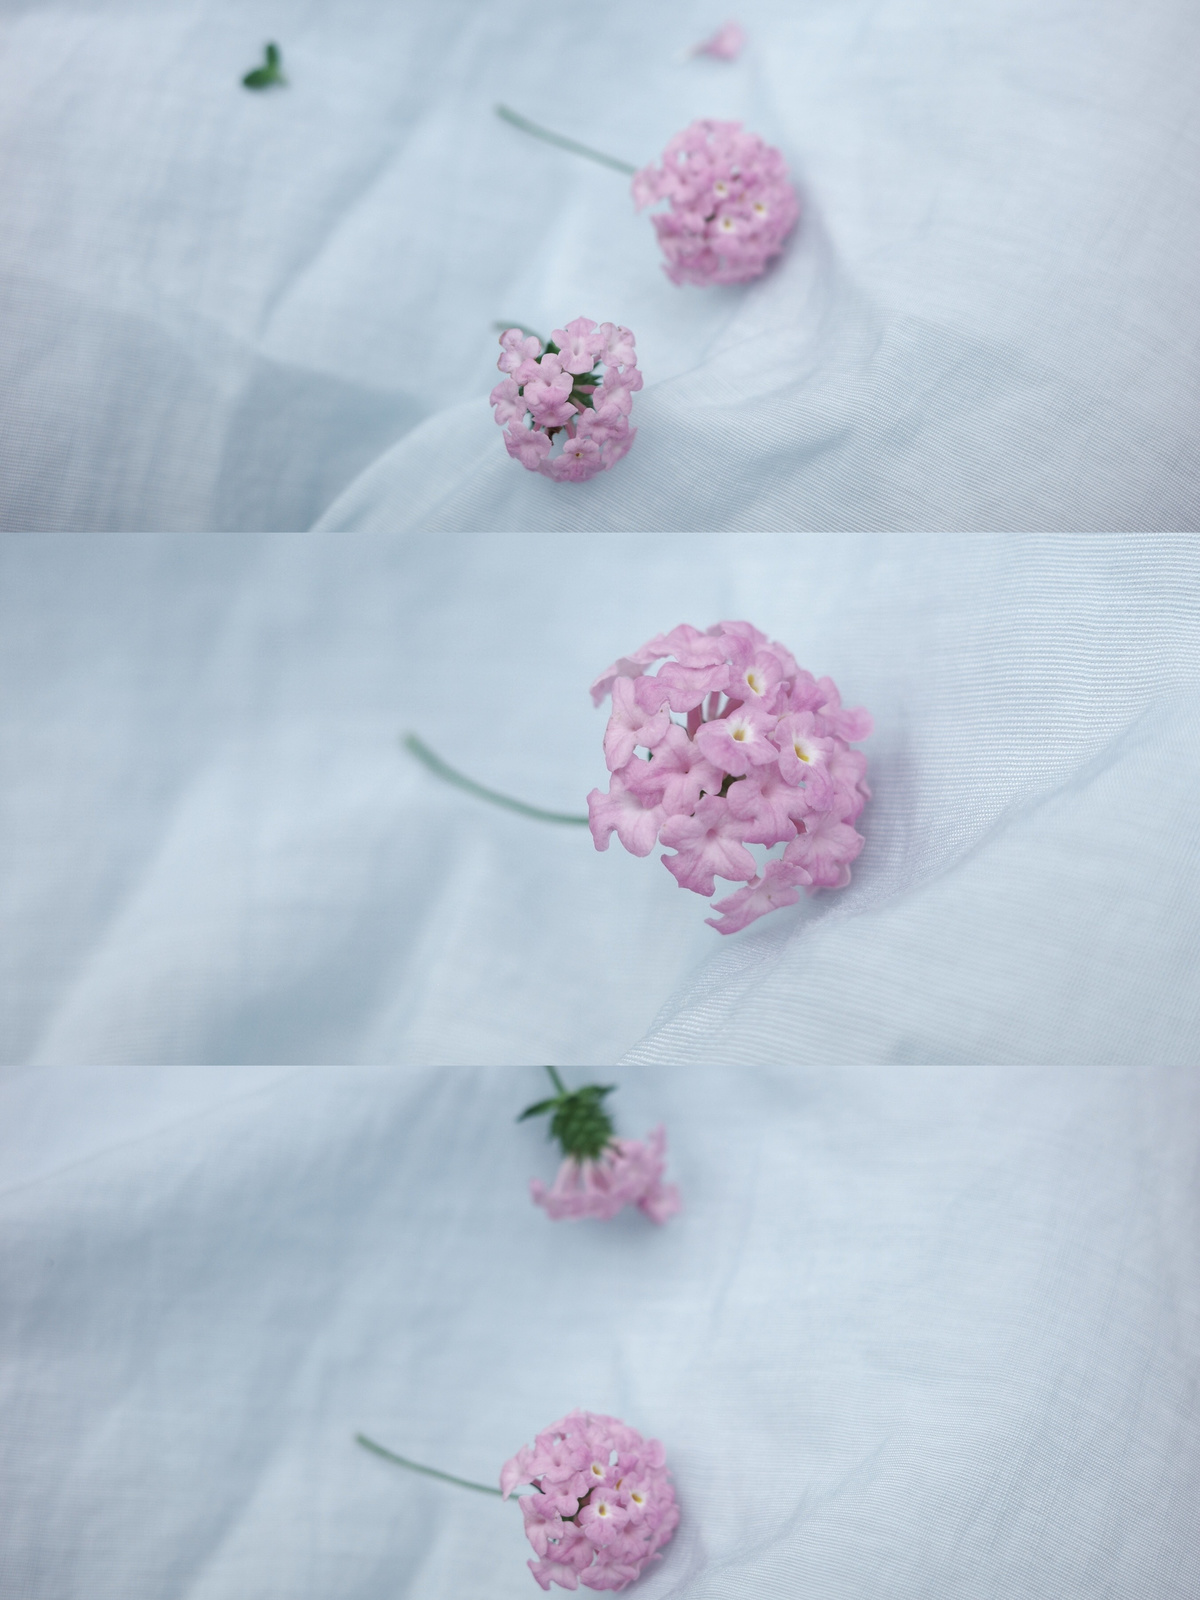 一束粉红色的小花 放在一块白色的布上。